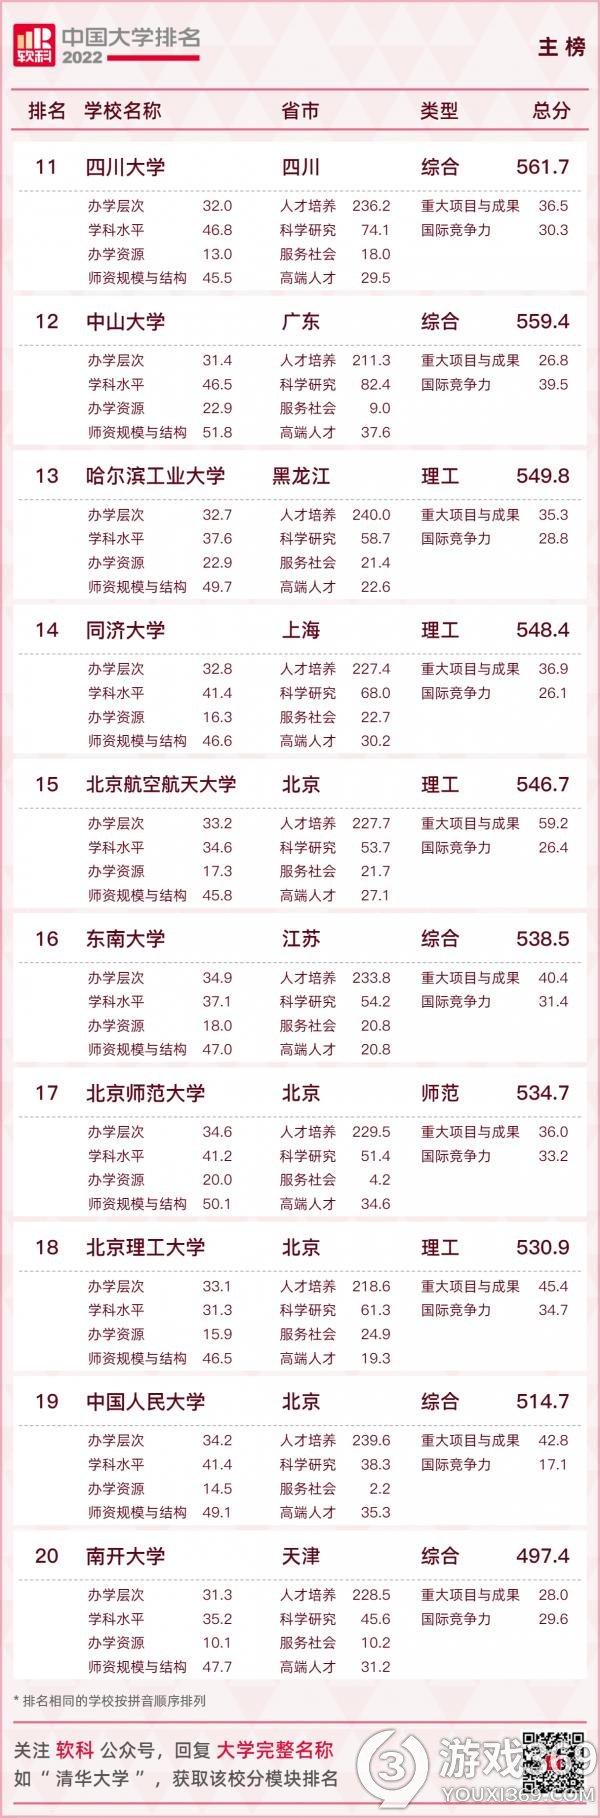 2022软科中国大学排名如何 2022软科中国大学主榜排名